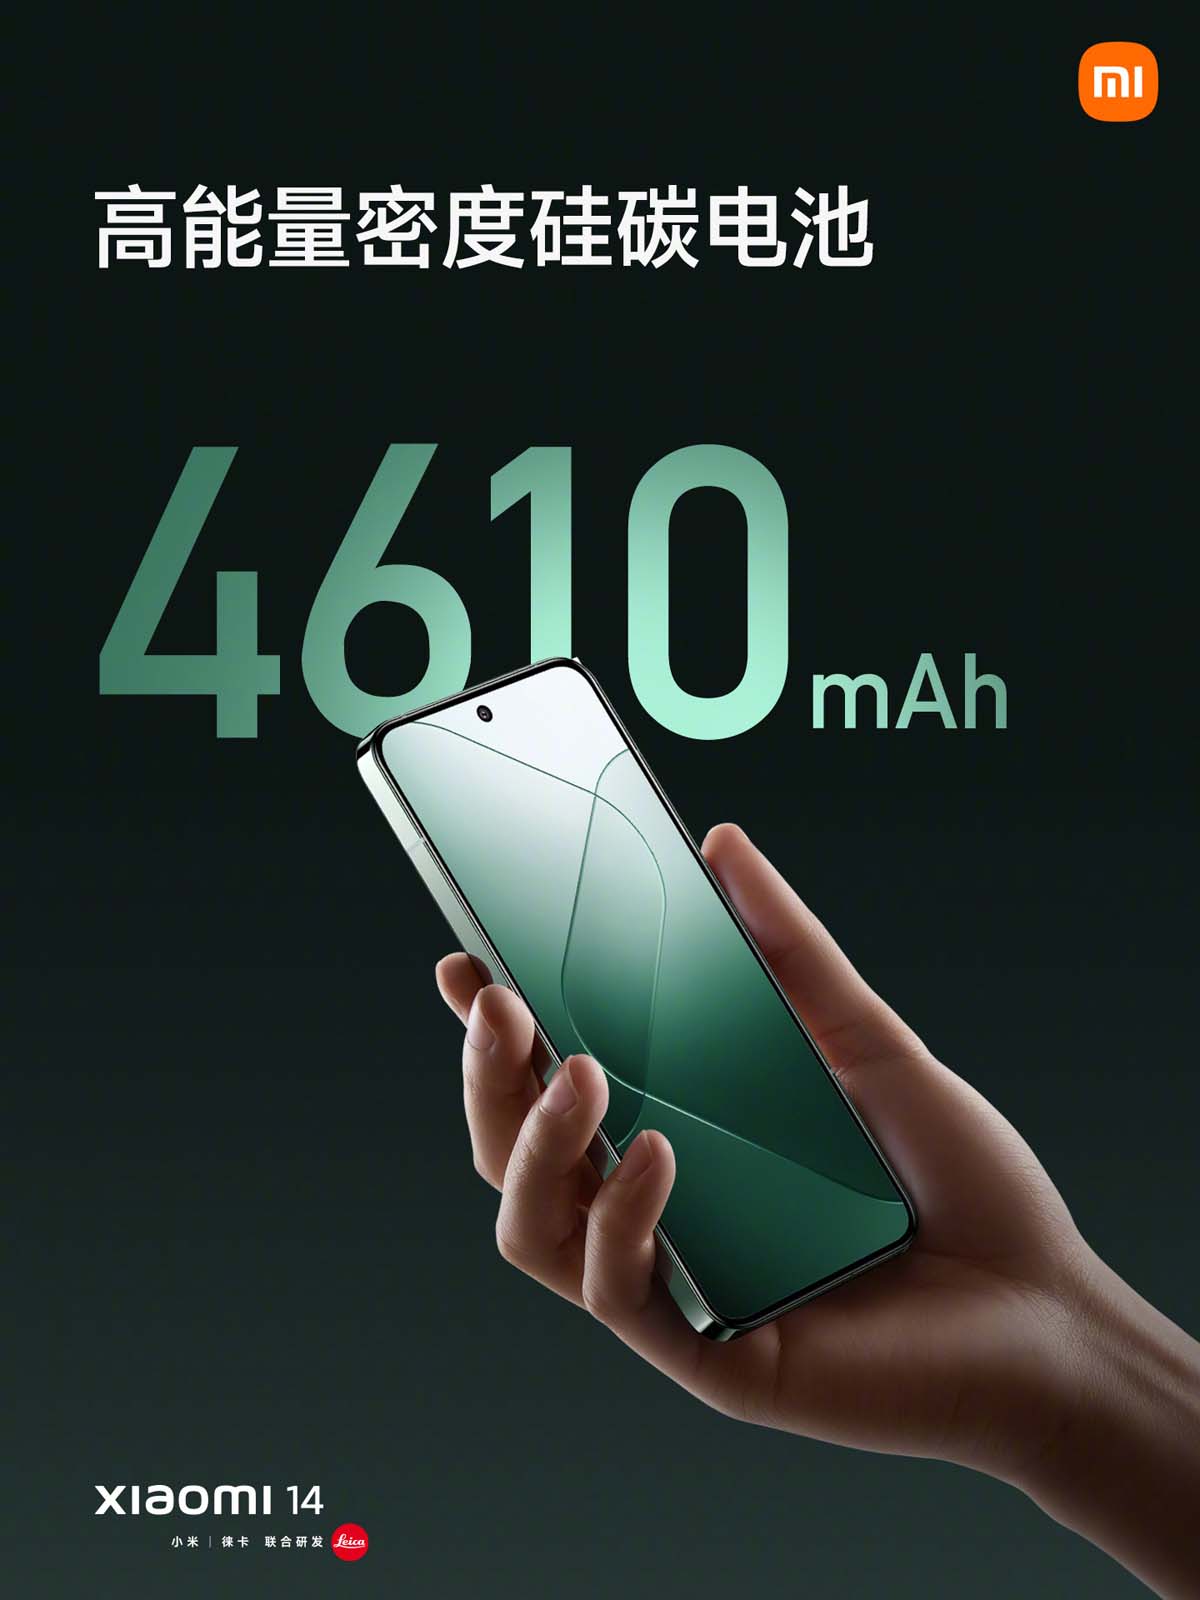 Dung lượng pin của Xiaomi 14 là 4610mAh